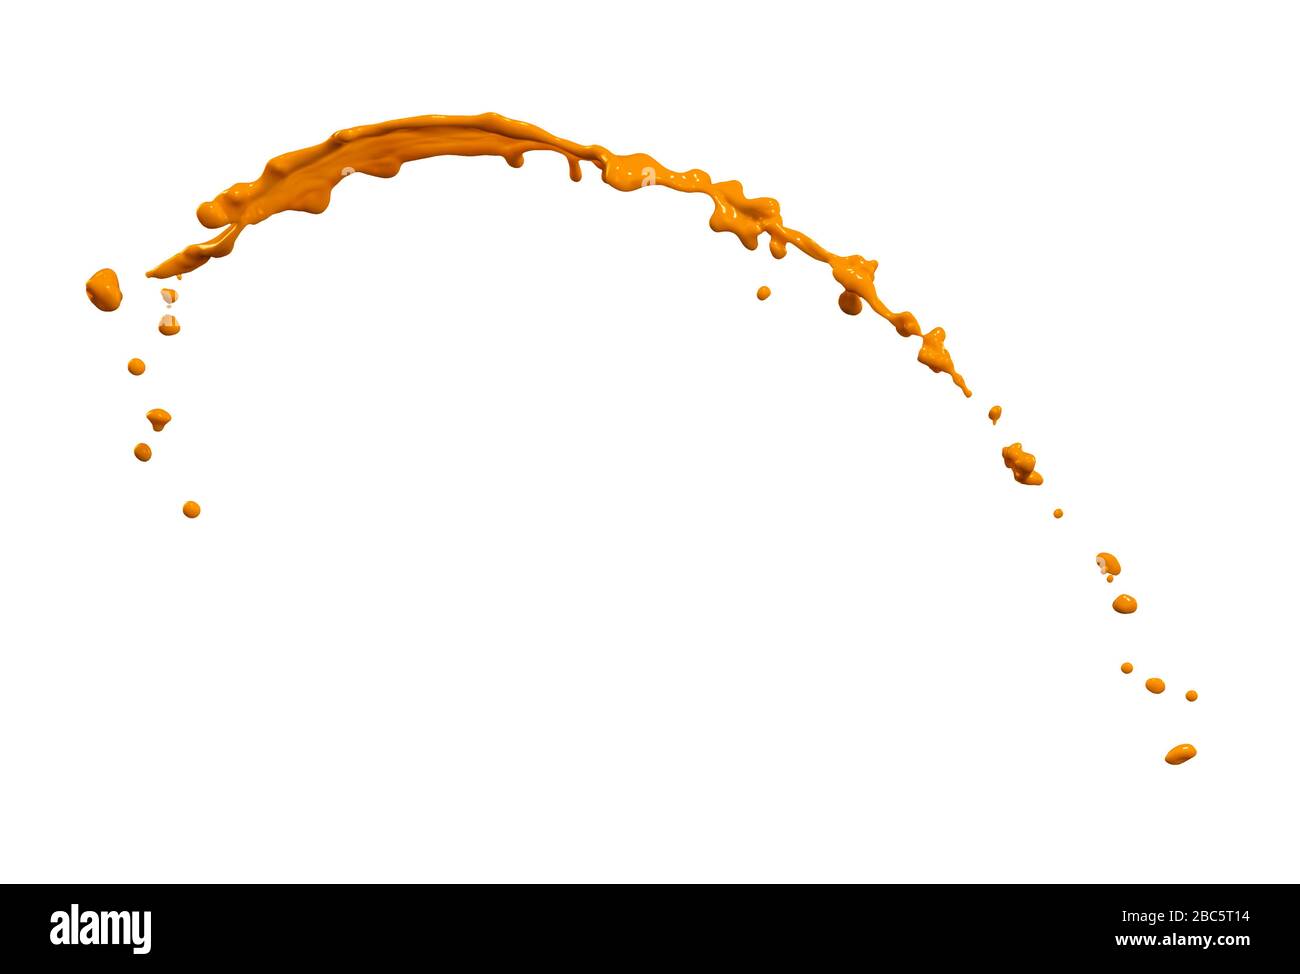 Grandioses orangefarbenes Spritzwasser isoliert auf weißem Hintergrund Stockfoto